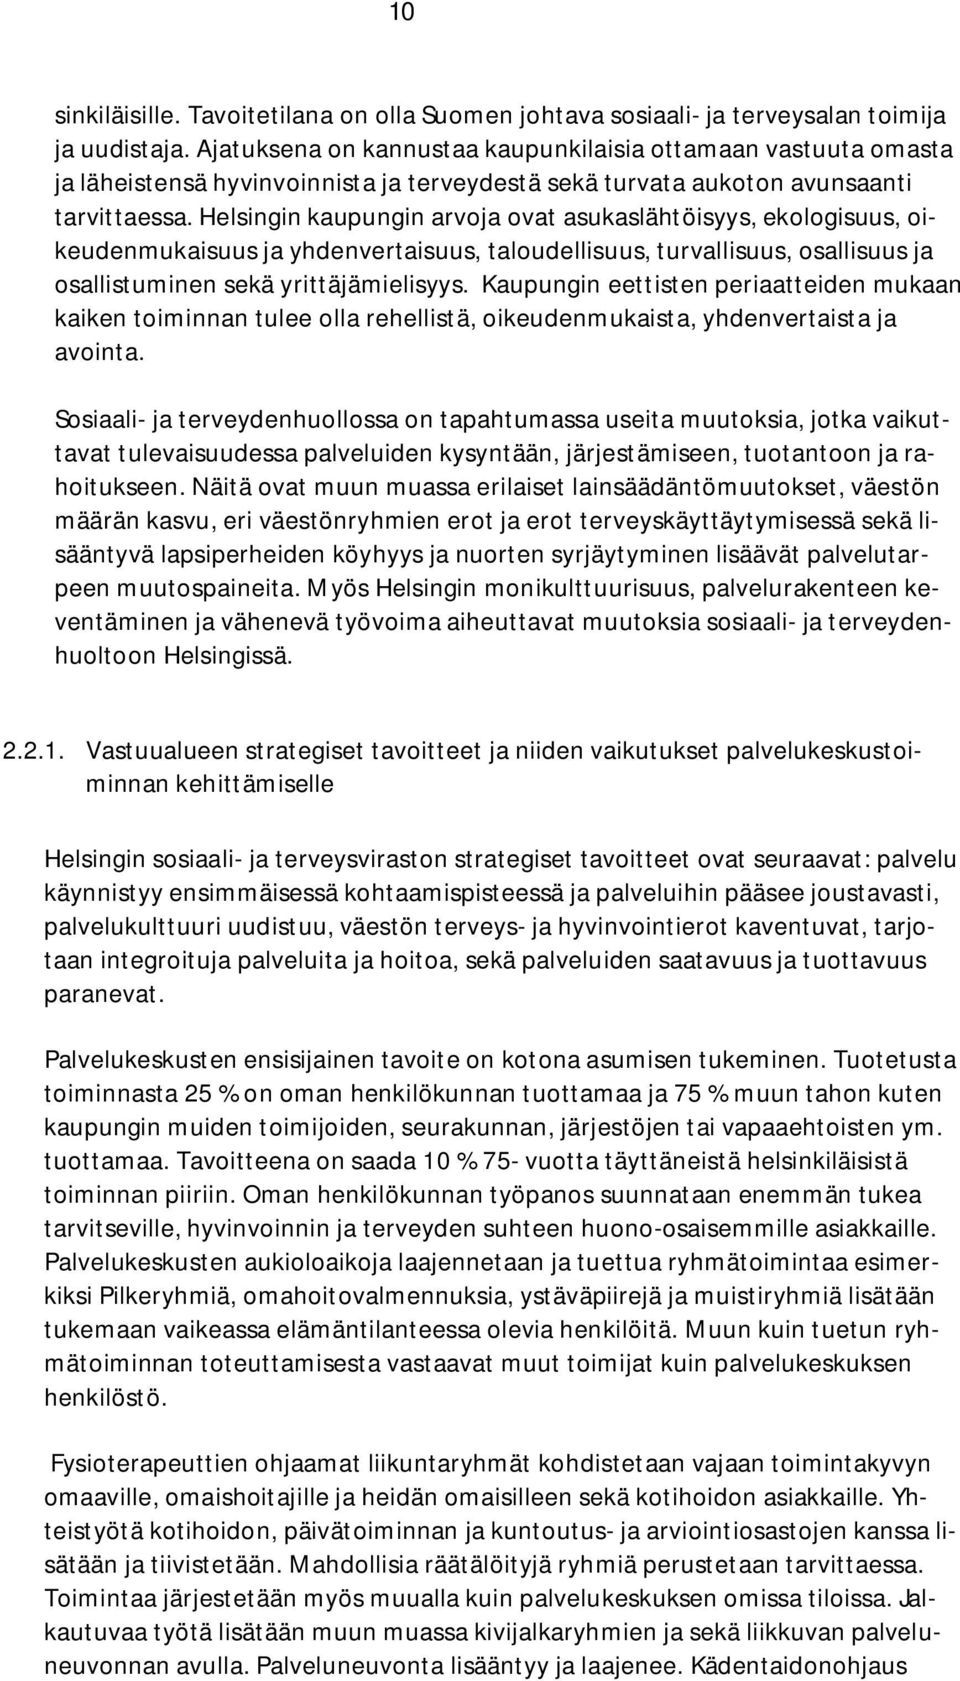 Helsingin kaupungin arvoja ovat asukaslähtöisyys, ekologisuus, oikeudenmukaisuus ja yhdenvertaisuus, taloudellisuus, turvallisuus, osallisuus ja osallistuminen sekä yrittäjämielisyys.